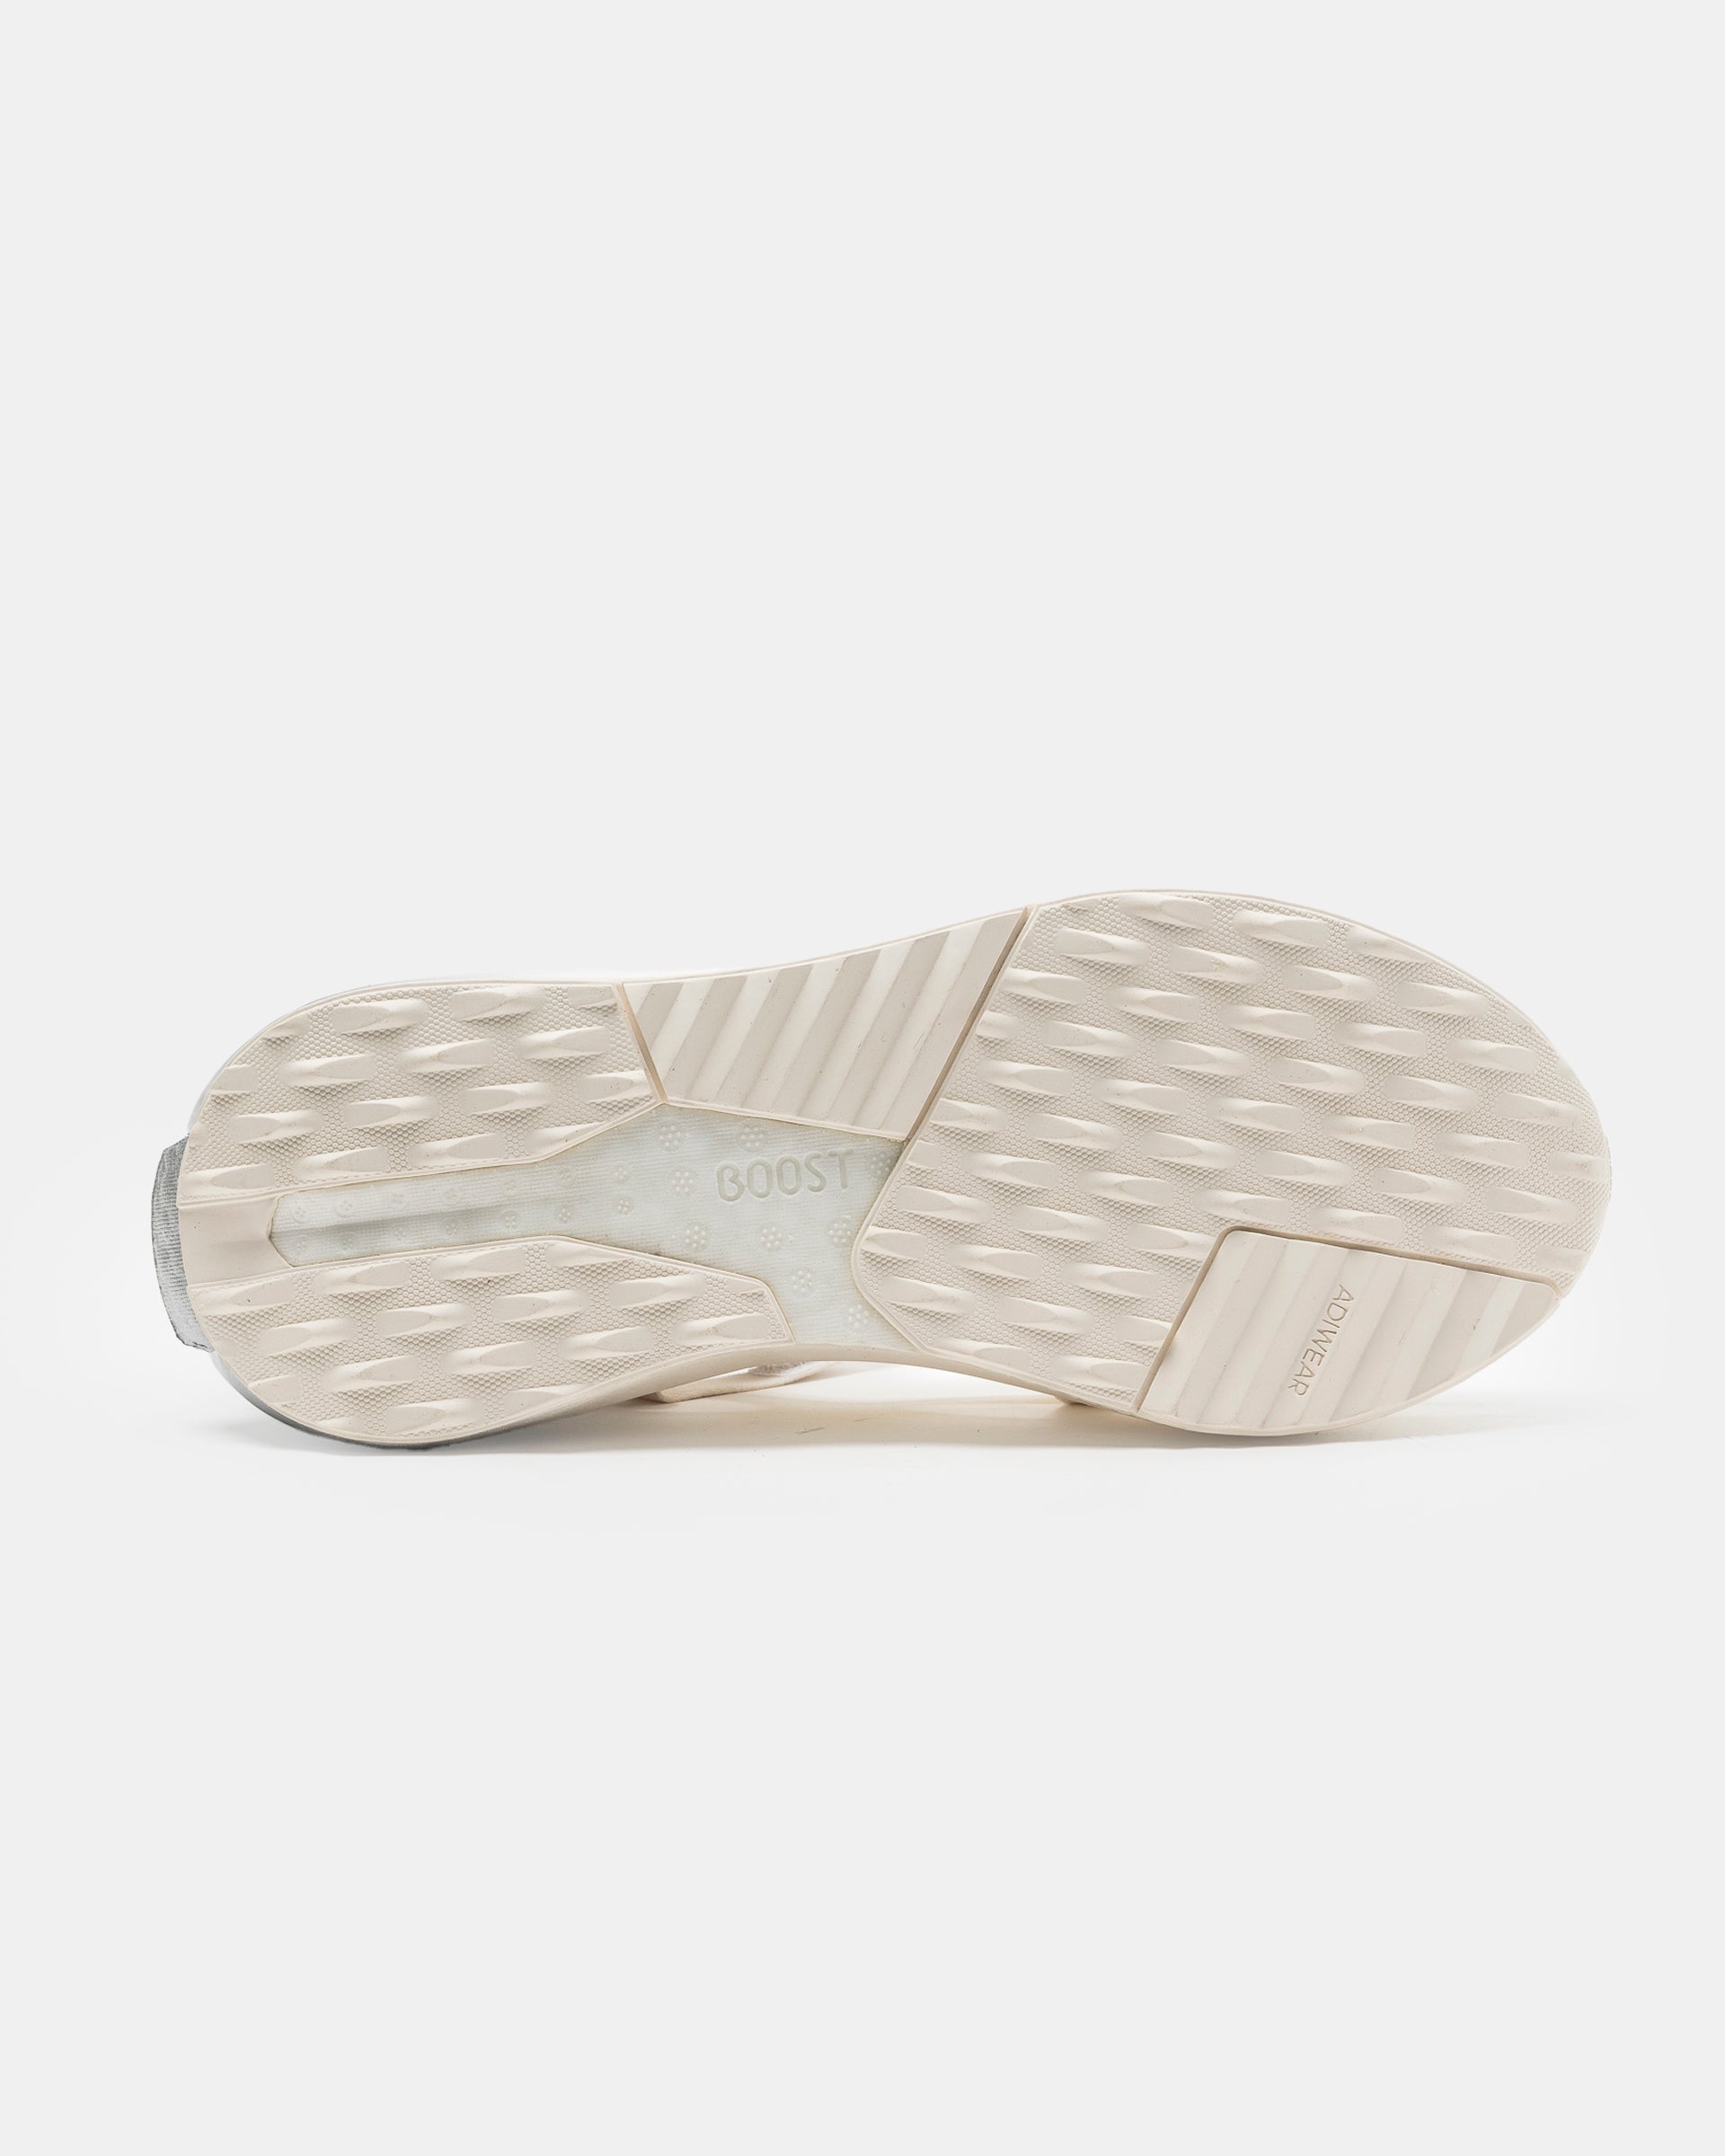 Rui x Adidas Ballet Shoe on white background